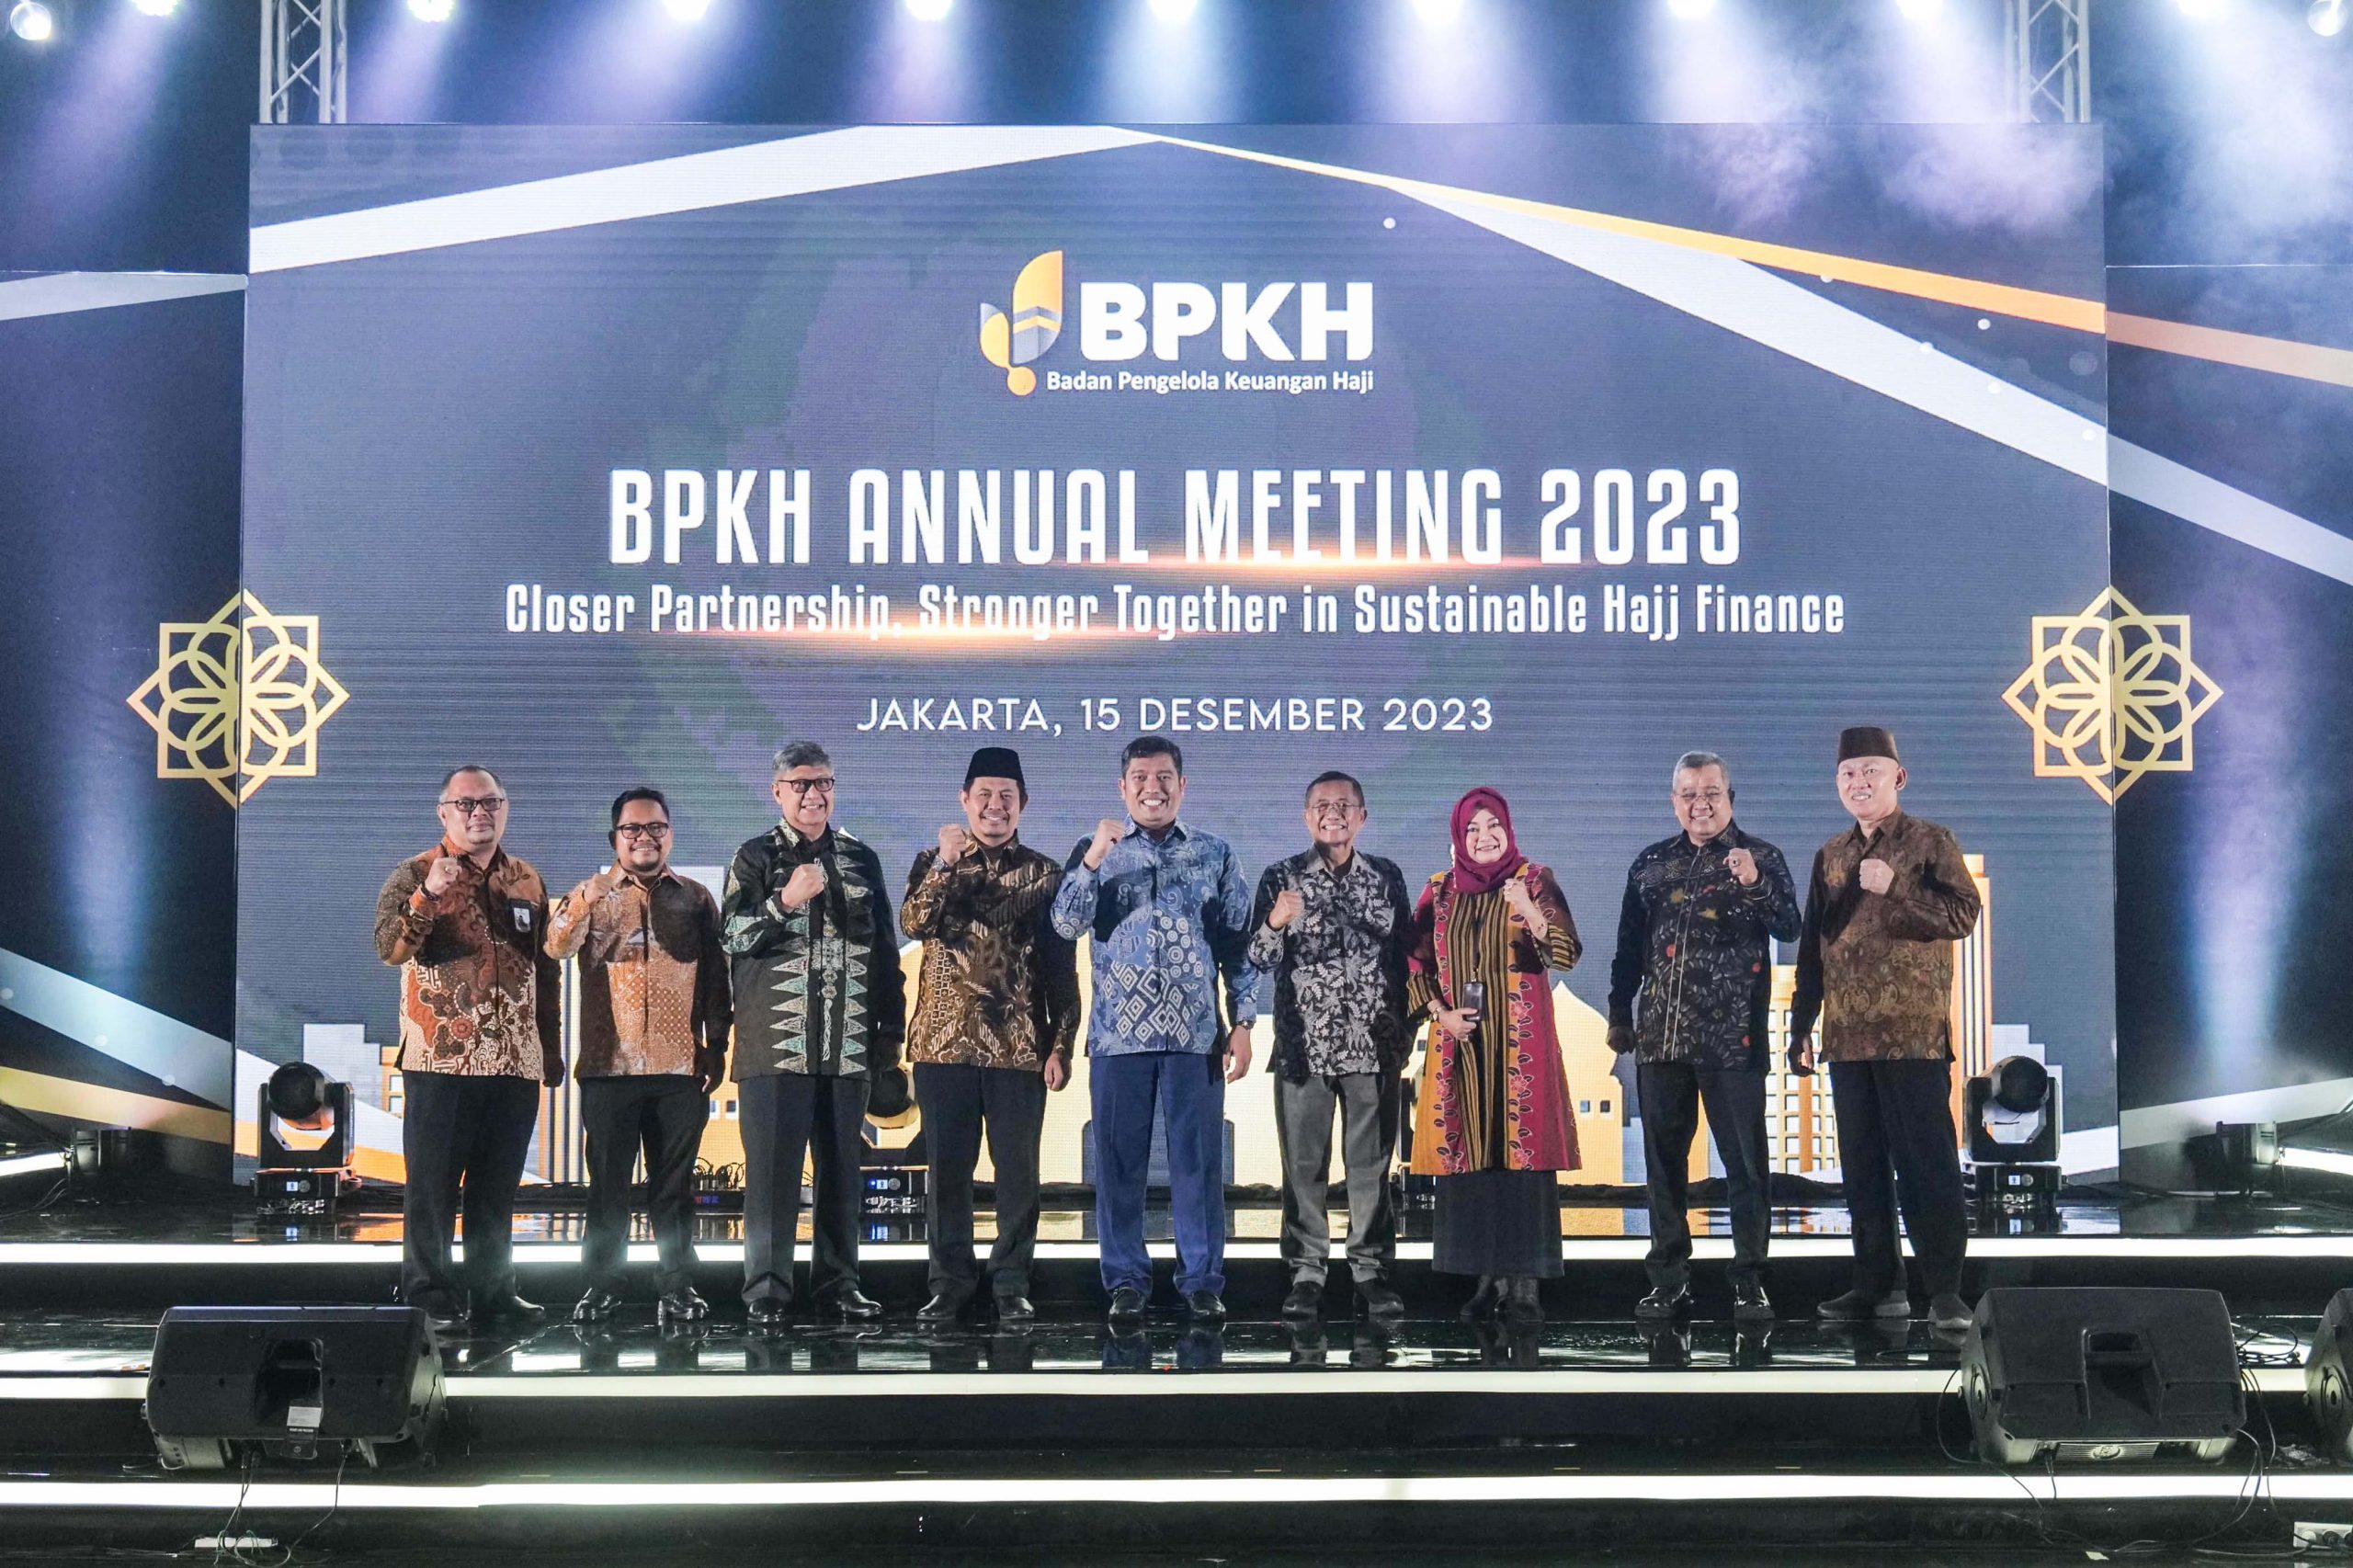 Gelar Annual Meeting 2023, BPKH Beri Penghargaan kepada Bank Syariah